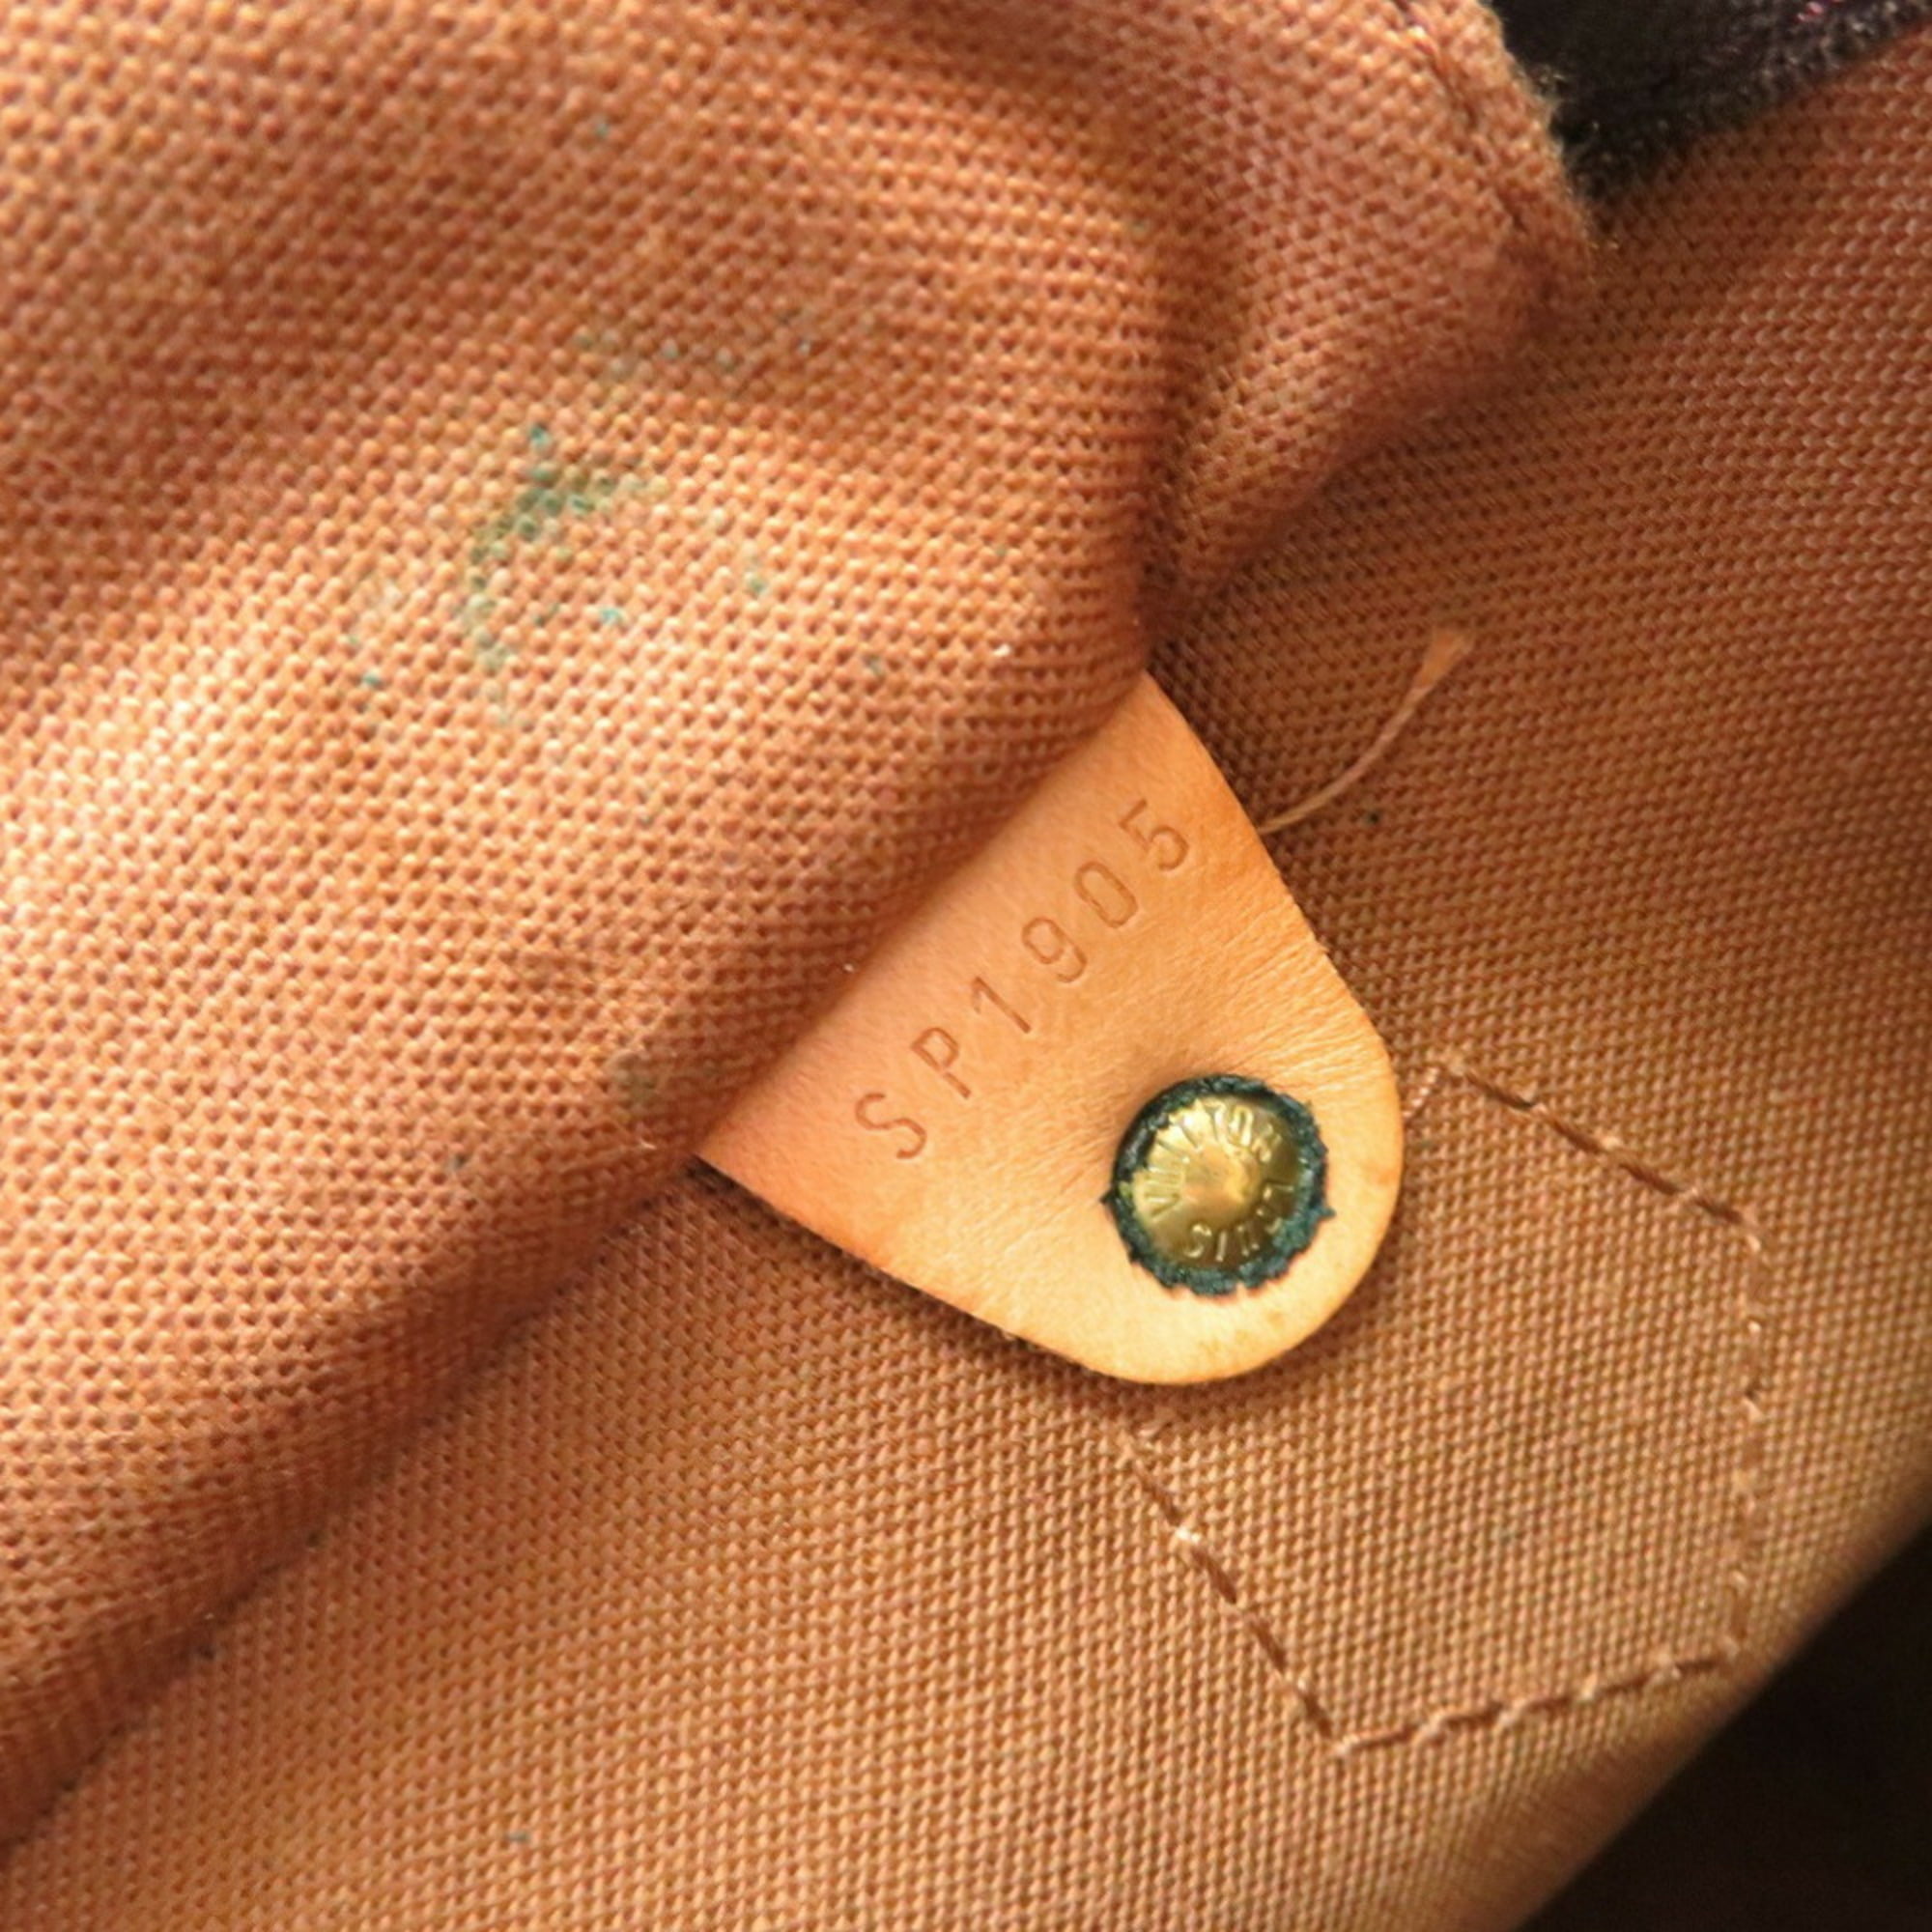 used Pre-owned Louis Vuitton Monogram Speedy 35 M41524 Handbag Canvas / Leather Brown Ladies (Fair), Adult Unisex, Size: (HxWxD): 23cm x 35cm x 18cm /